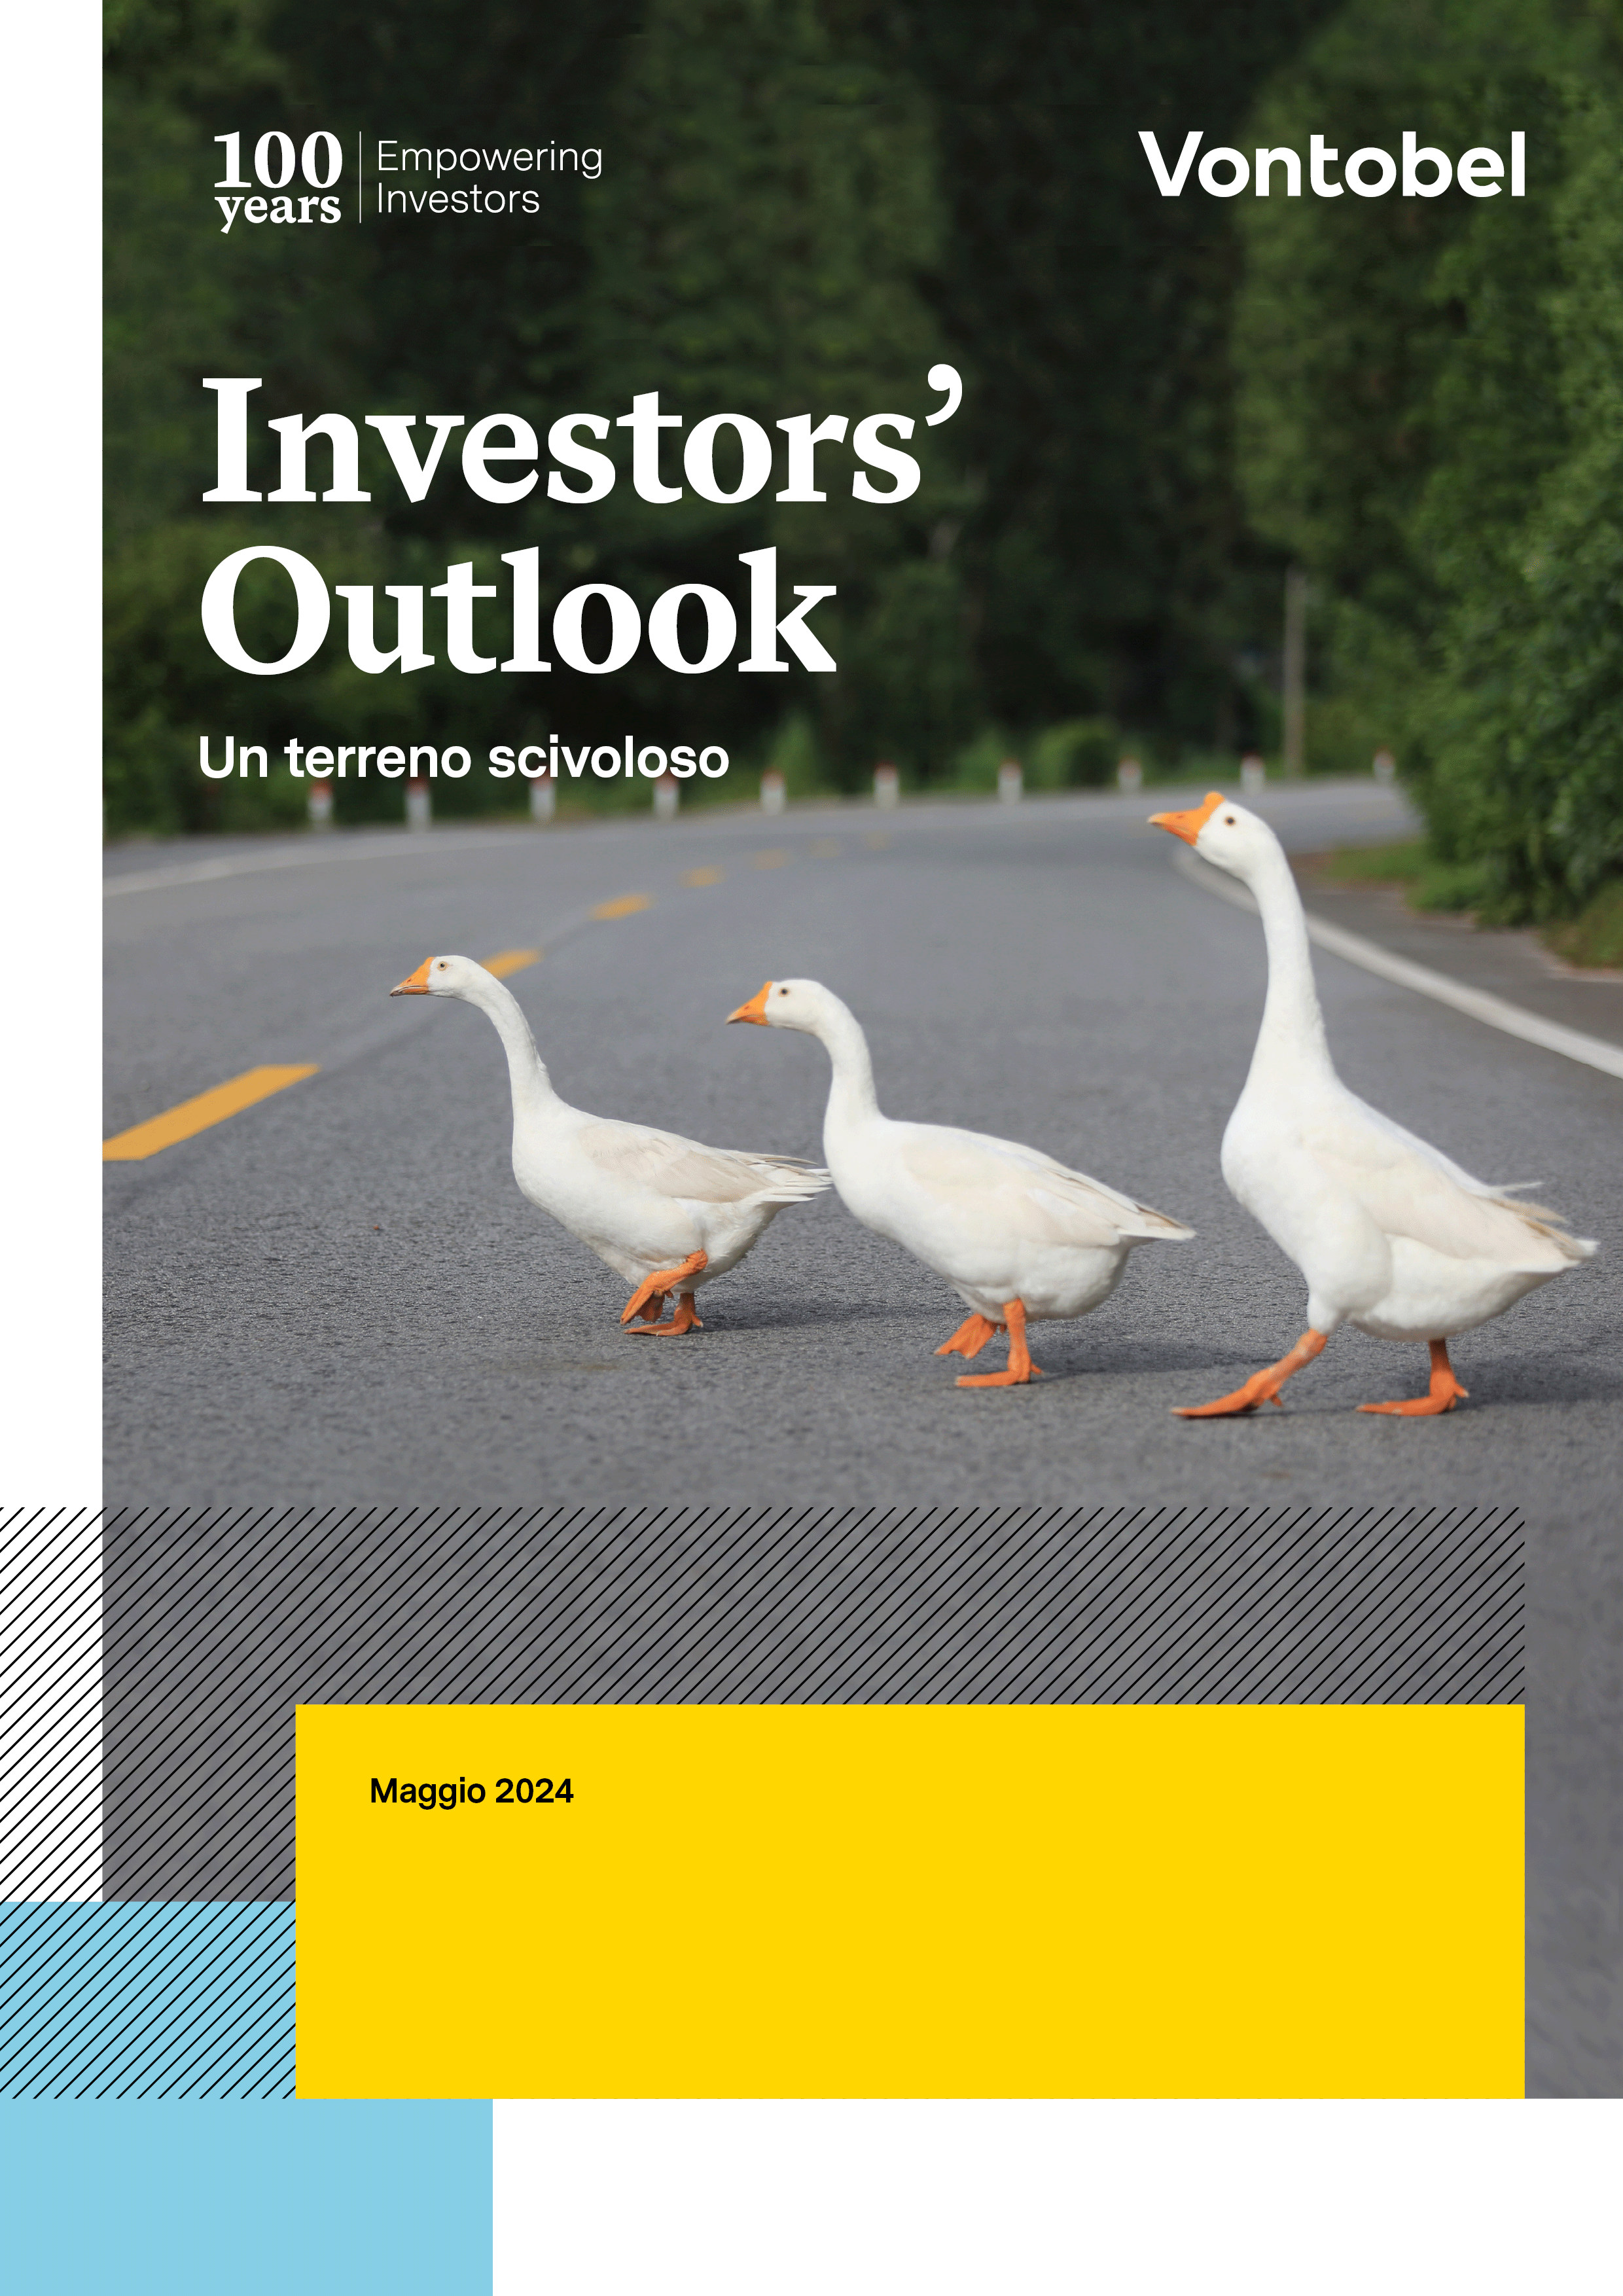 Investor's Outlook di maggio di Vontobel - Copertina PDF con oche che attraversano una strada